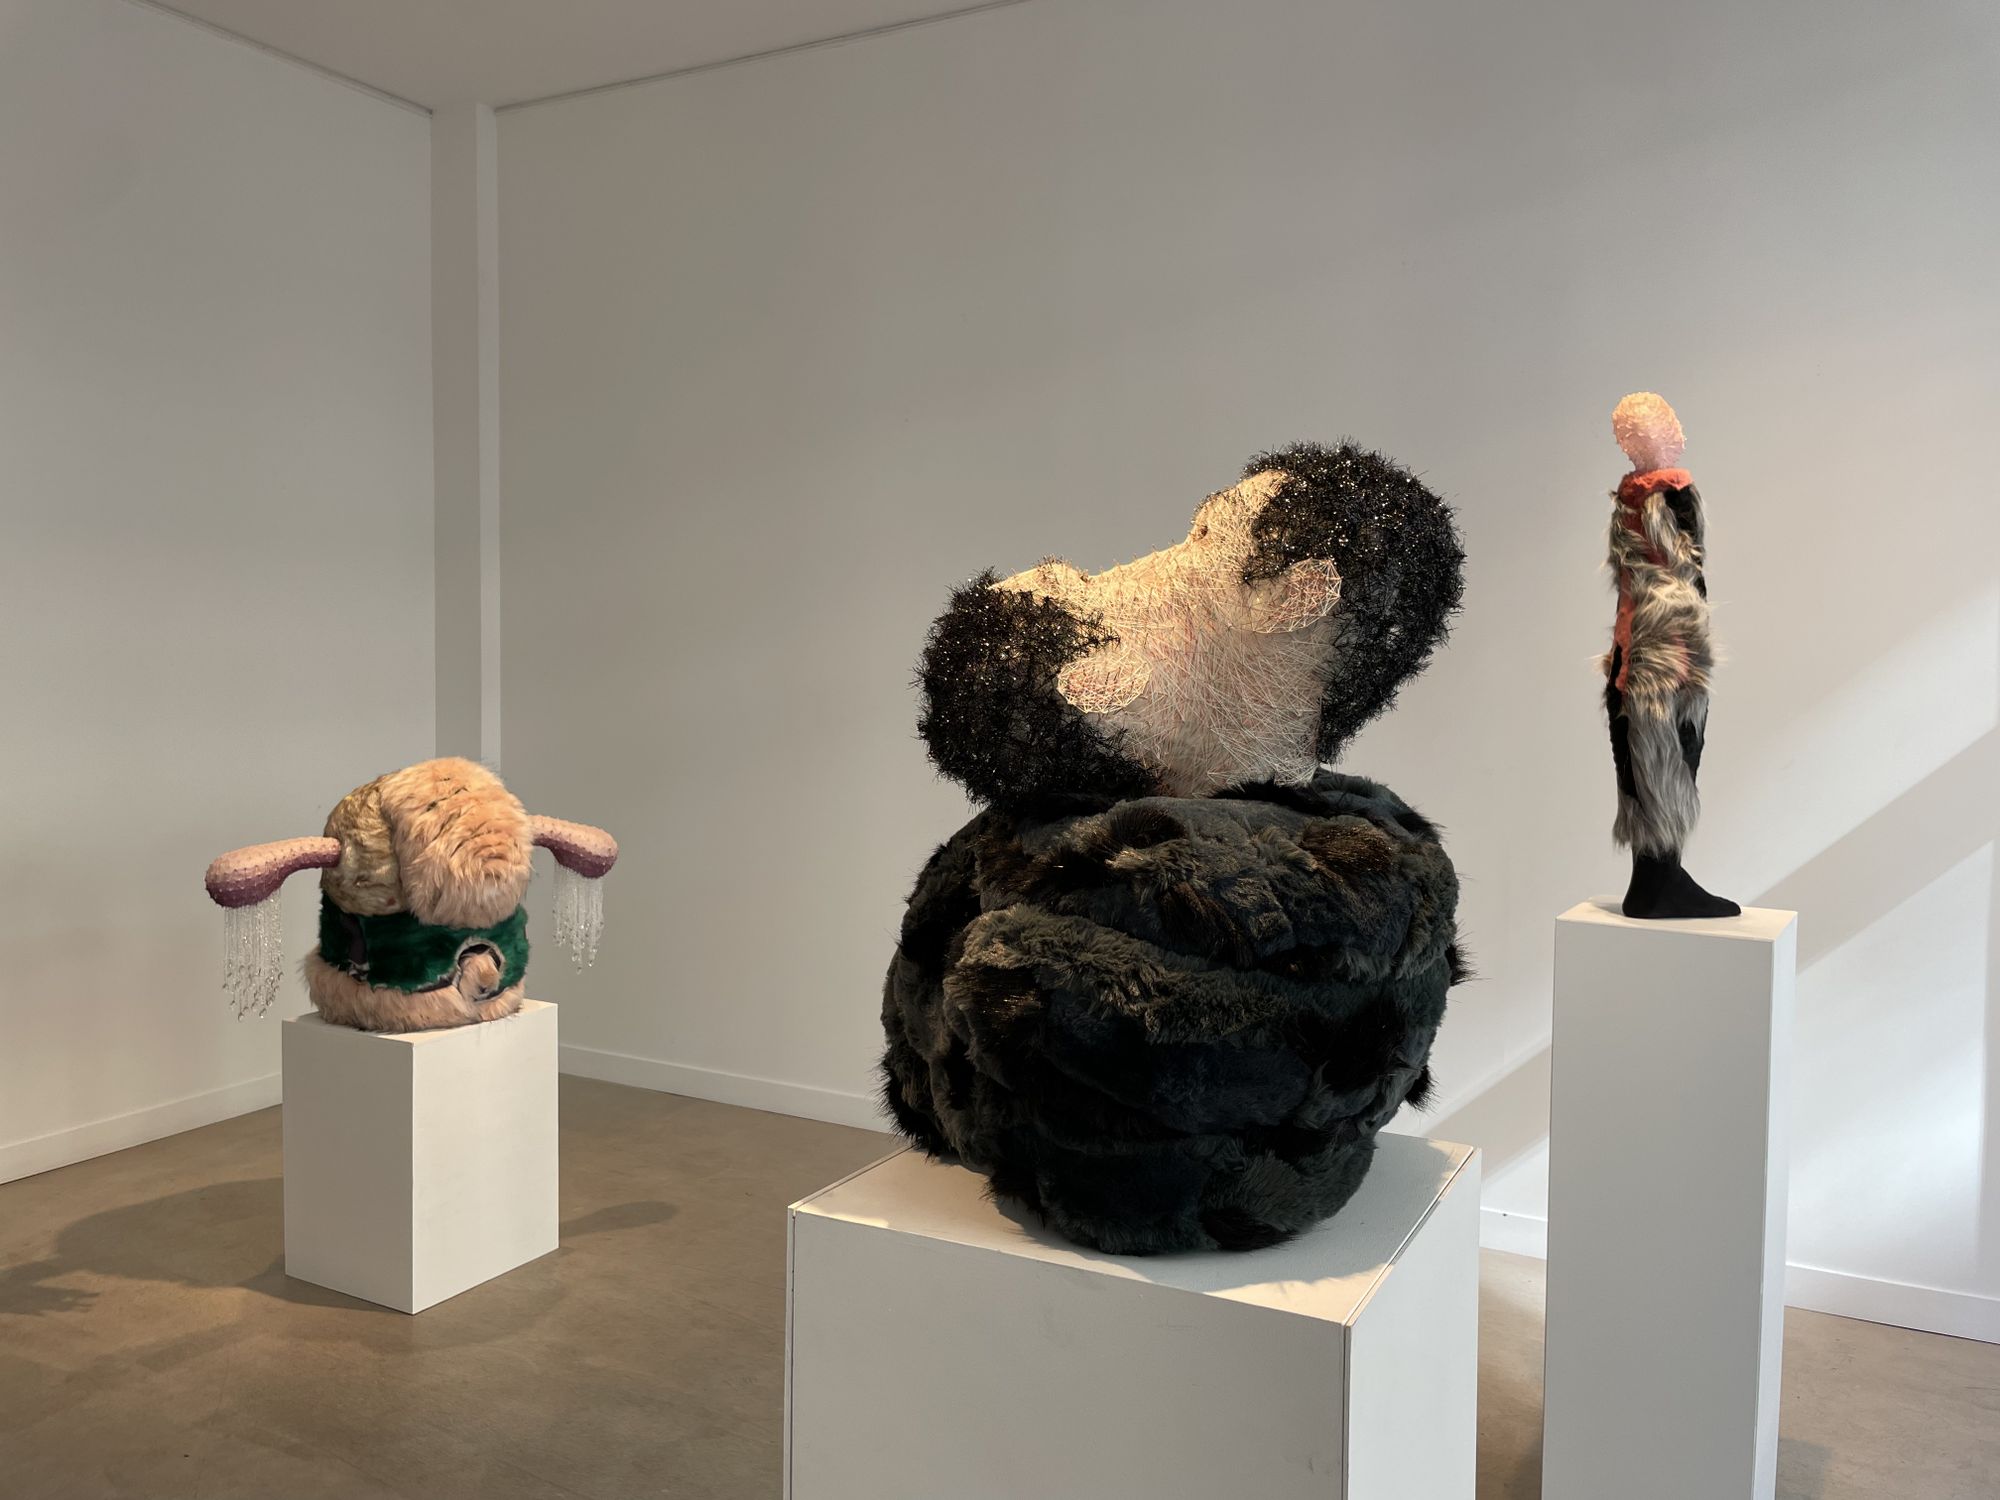 Kang Kun, 'Sur une Île isolée' at Galerie Vazieux, Paris, France on 17 ...